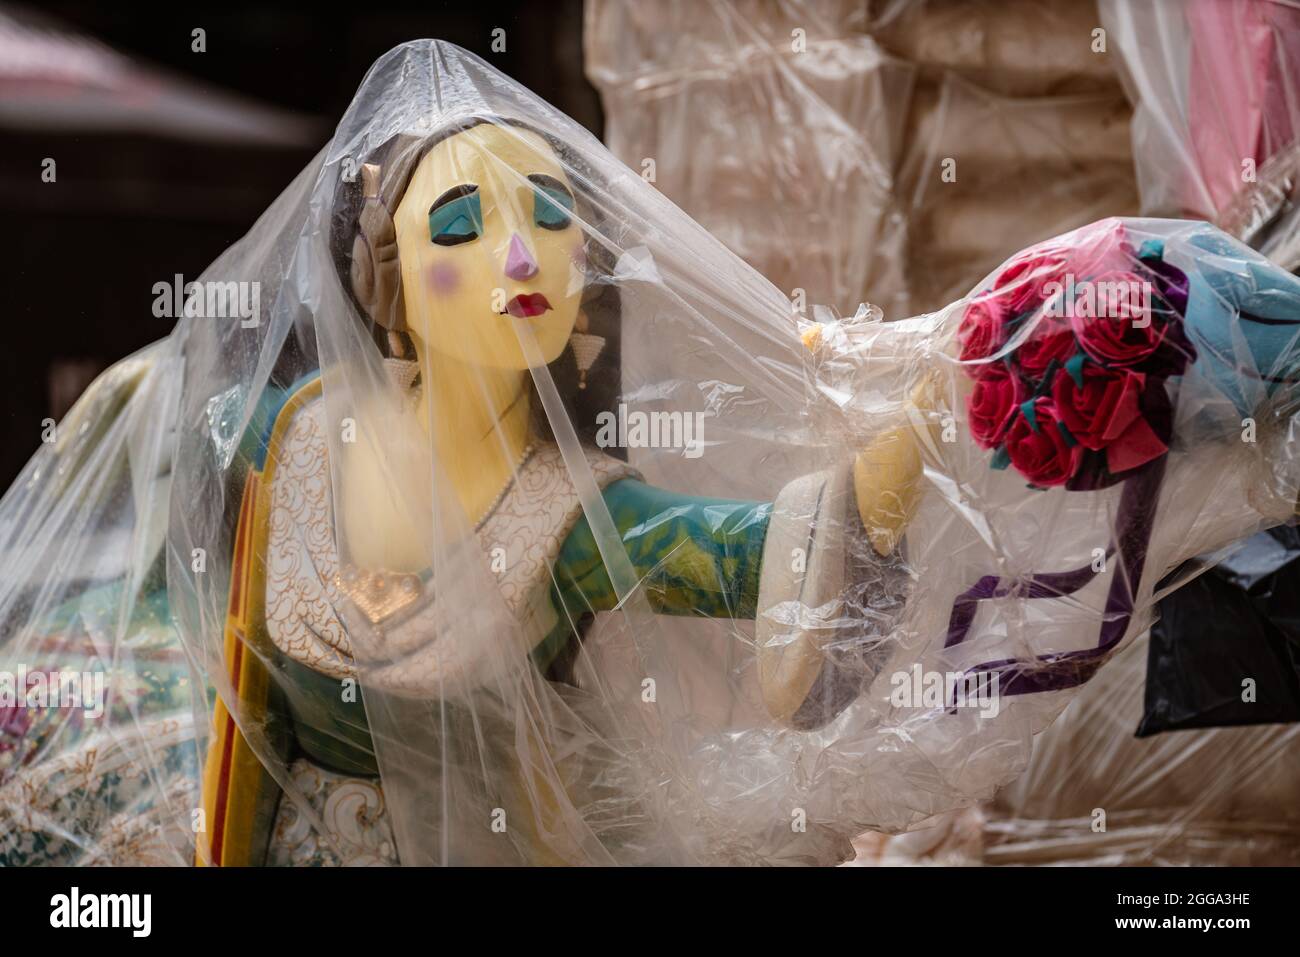 Valence, Espagne. 30 août 2021. Figure connue sous le nom de 'Ninot' représentant une femme vêtue de vêtements traditionnels pour les Fallas . Falla NaJordana Banque D'Images